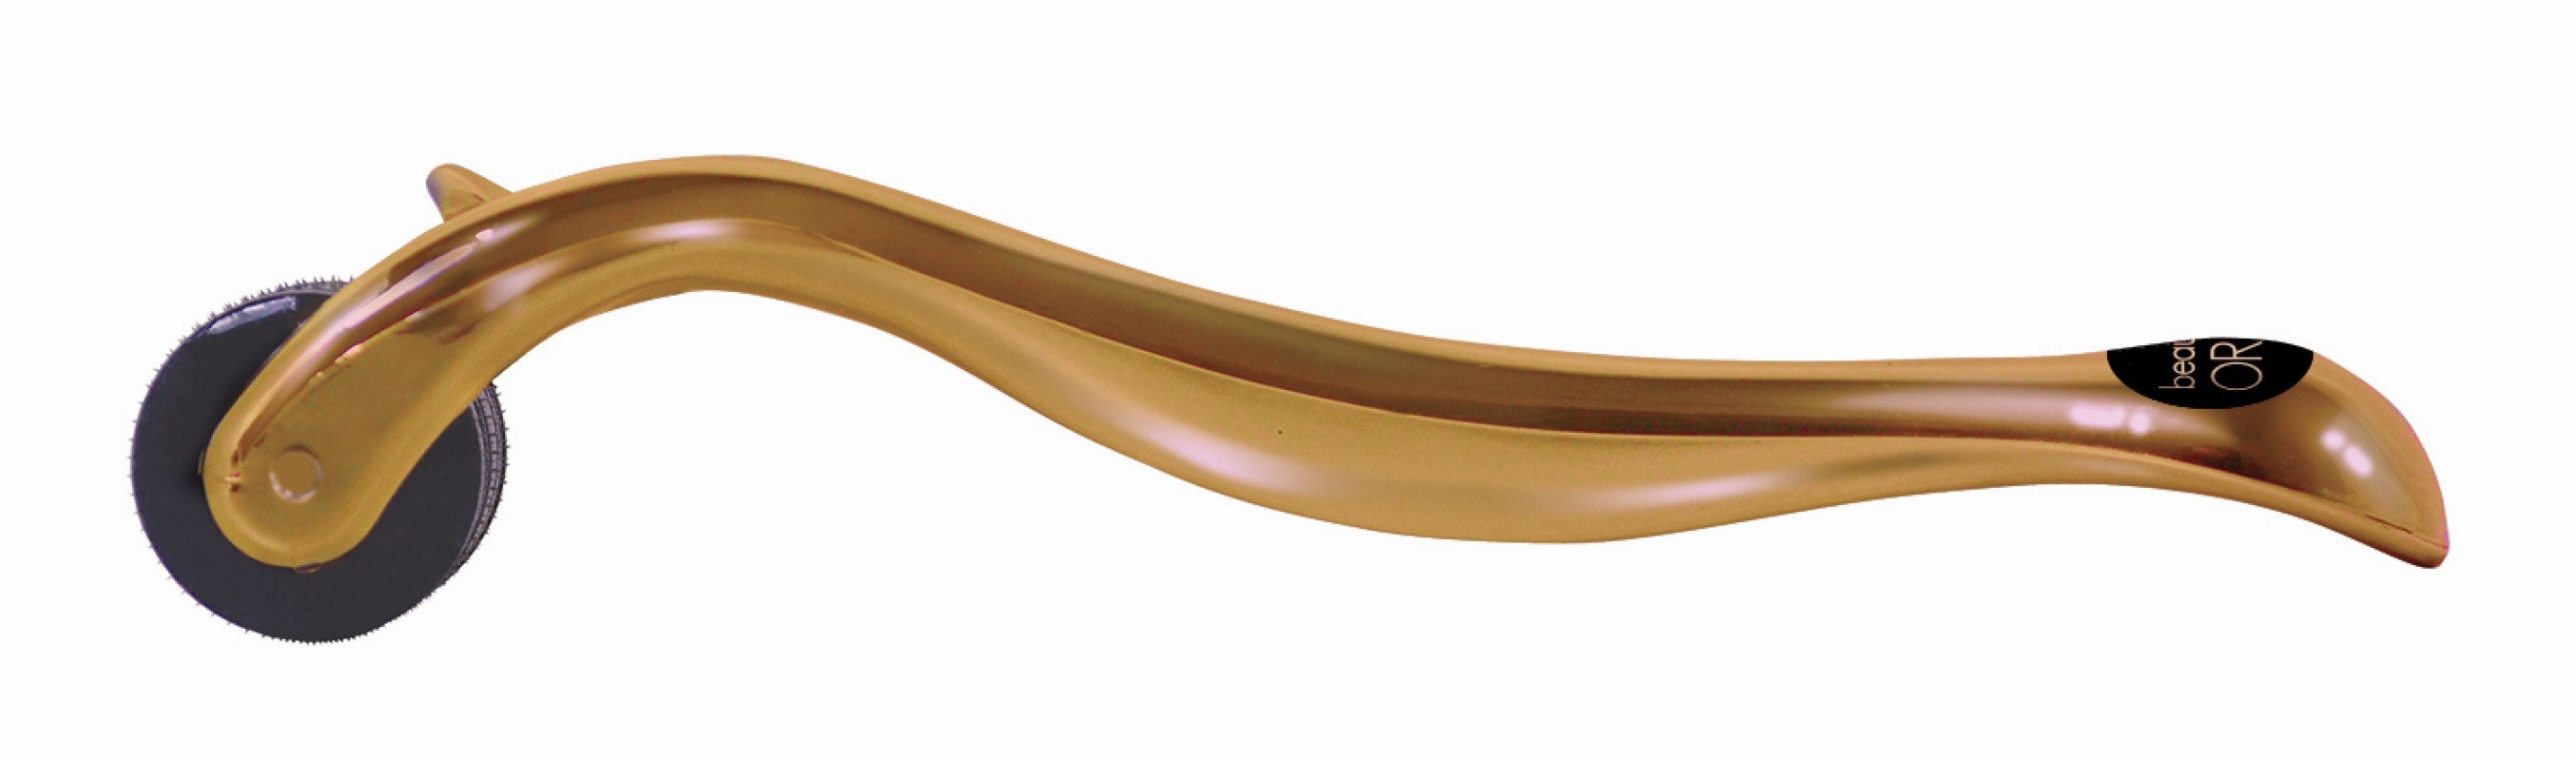 ORA Bronze Deluxe Microneedle Dermal Roller System - BRONZE Handle/Black Head (0.25mm)